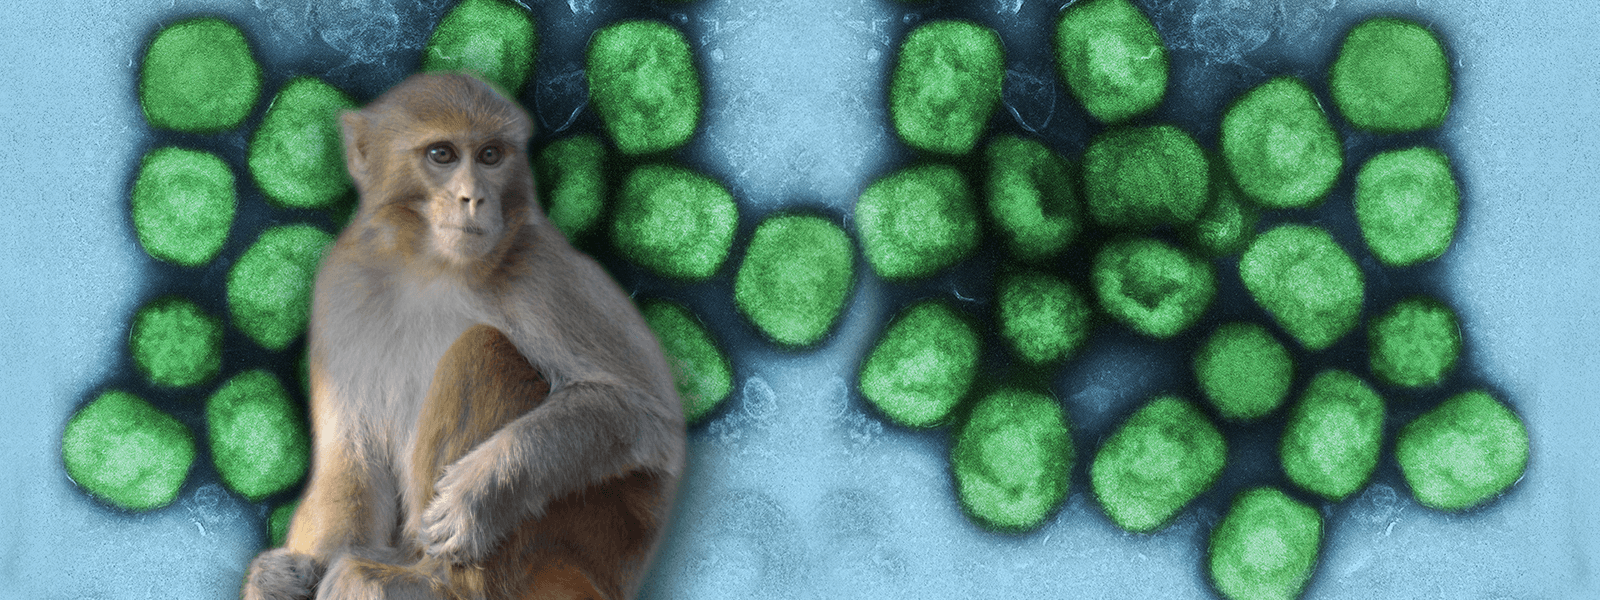 Małpa i wirus małpiej ospy pod mikroskopem